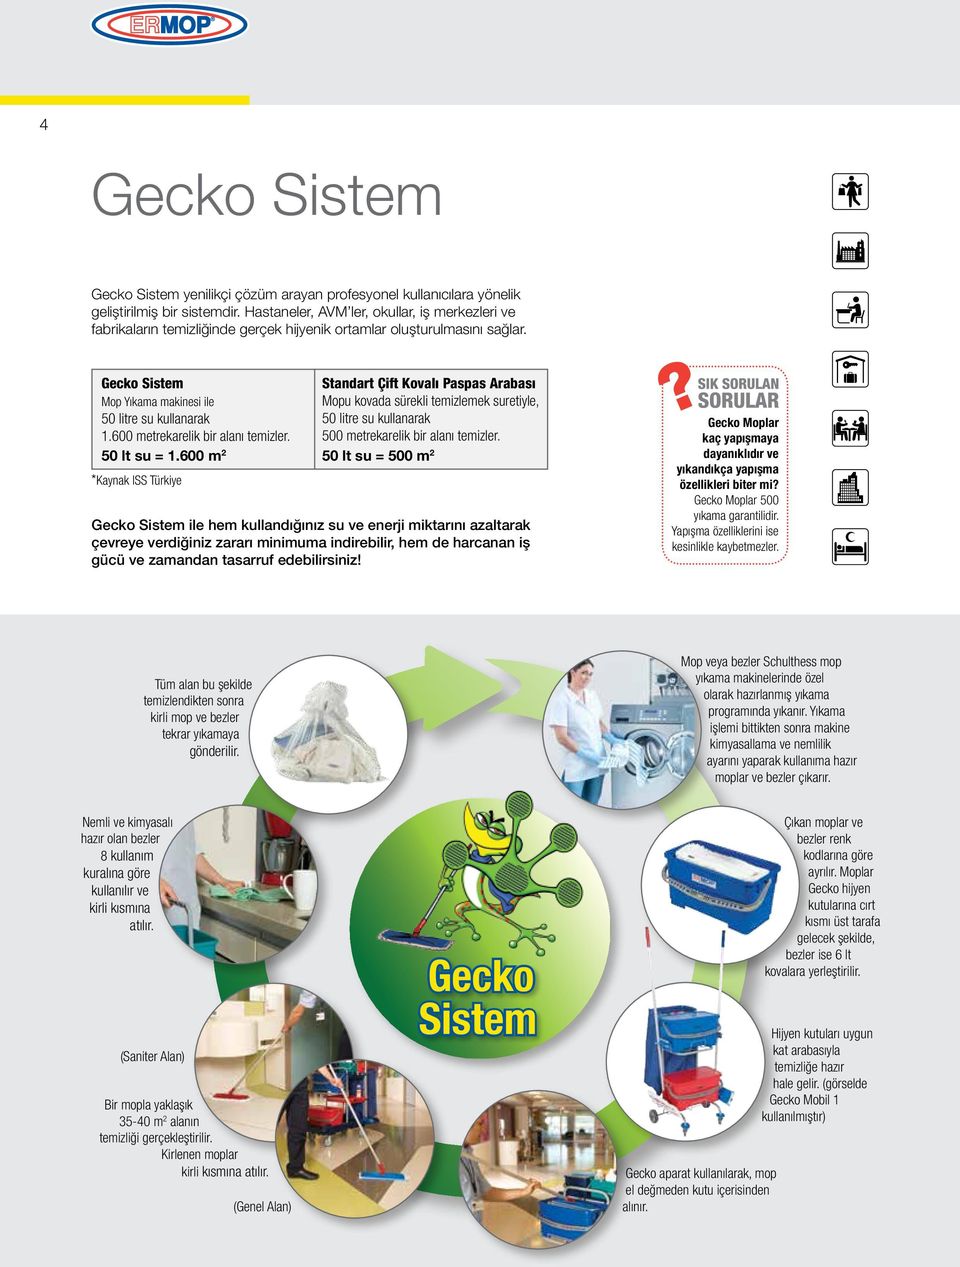 Gecko Sistem Standart Çift Kovalı Paspas Arabası Mop Yıkama makinesi ile Mopu kovada sürekli temizlemek suretiyle, 50 litre su kullanarak 50 litre su kullanarak 1.600 metrekarelik bir alanı temizler.